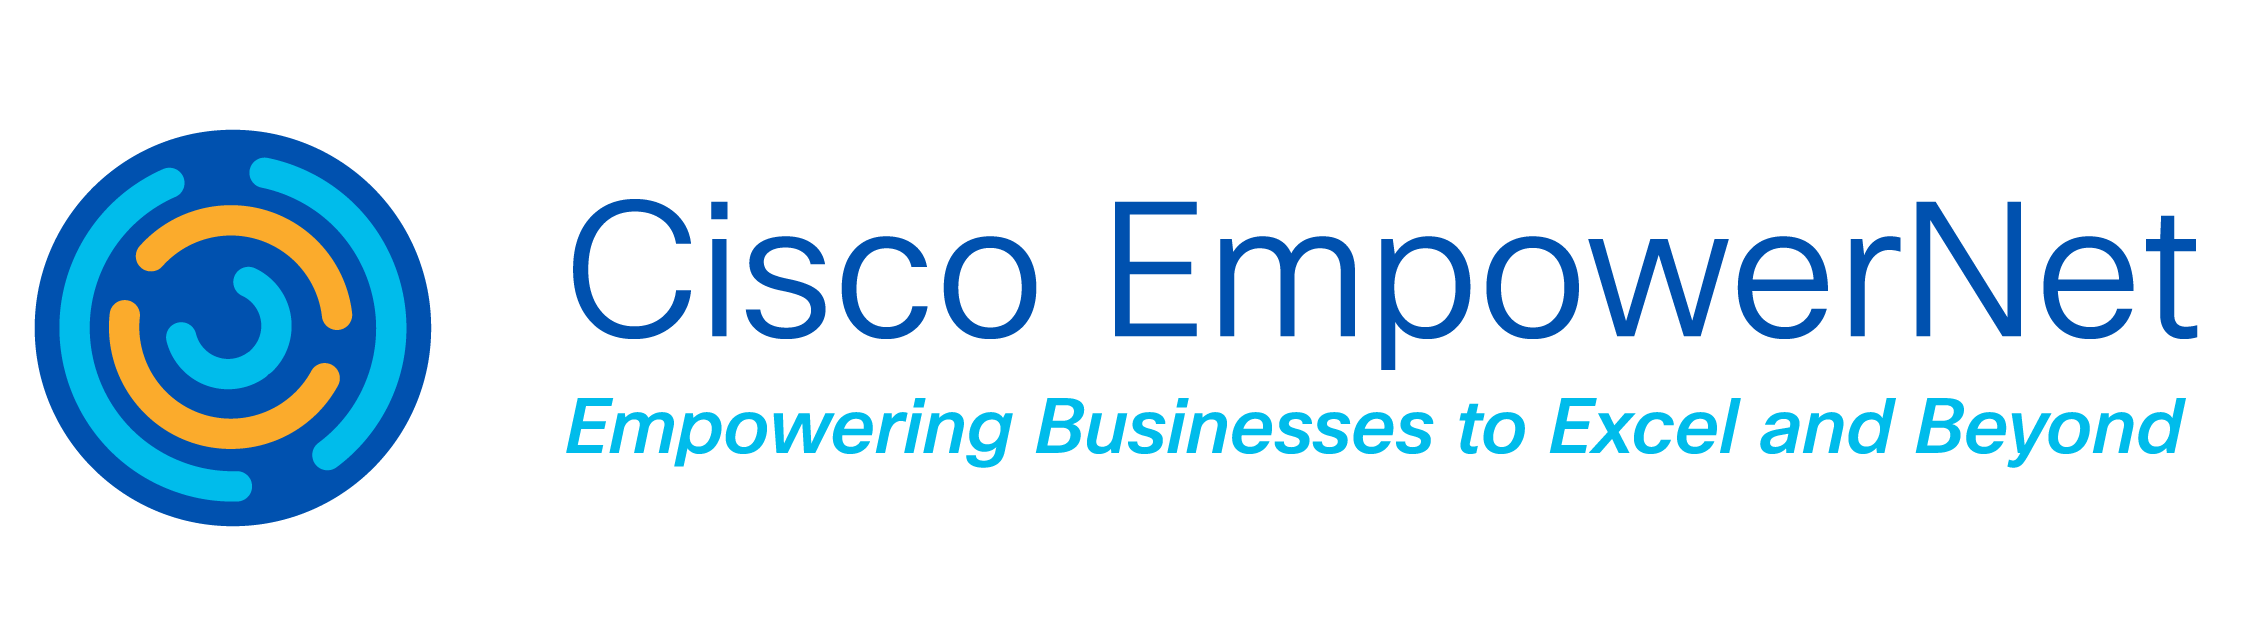 Cisco Empowernet